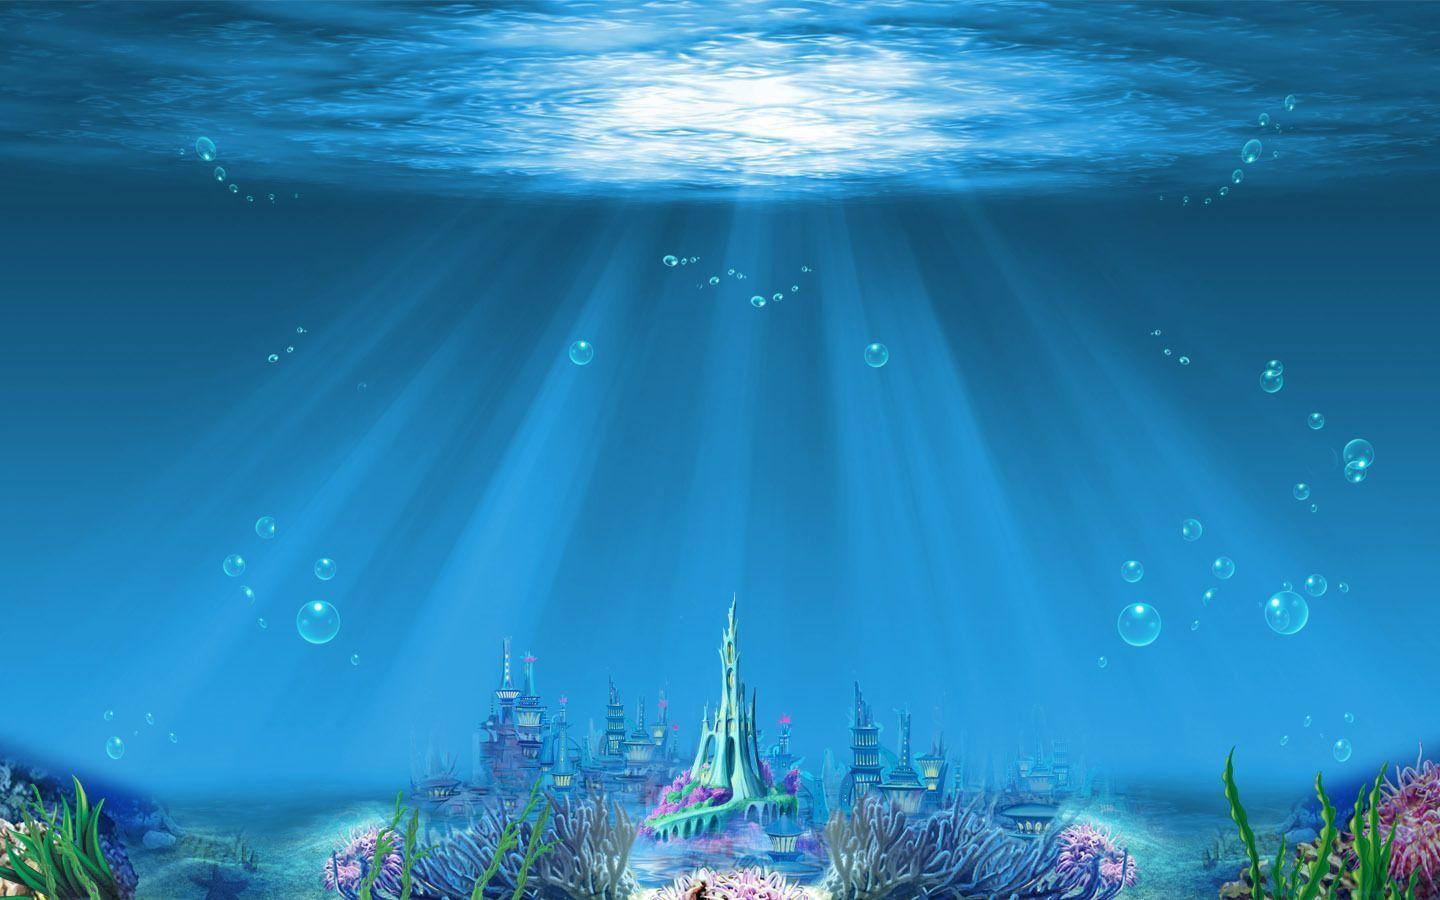 barbie mermaid tale wallpaper Movies Wallpaper 15845315